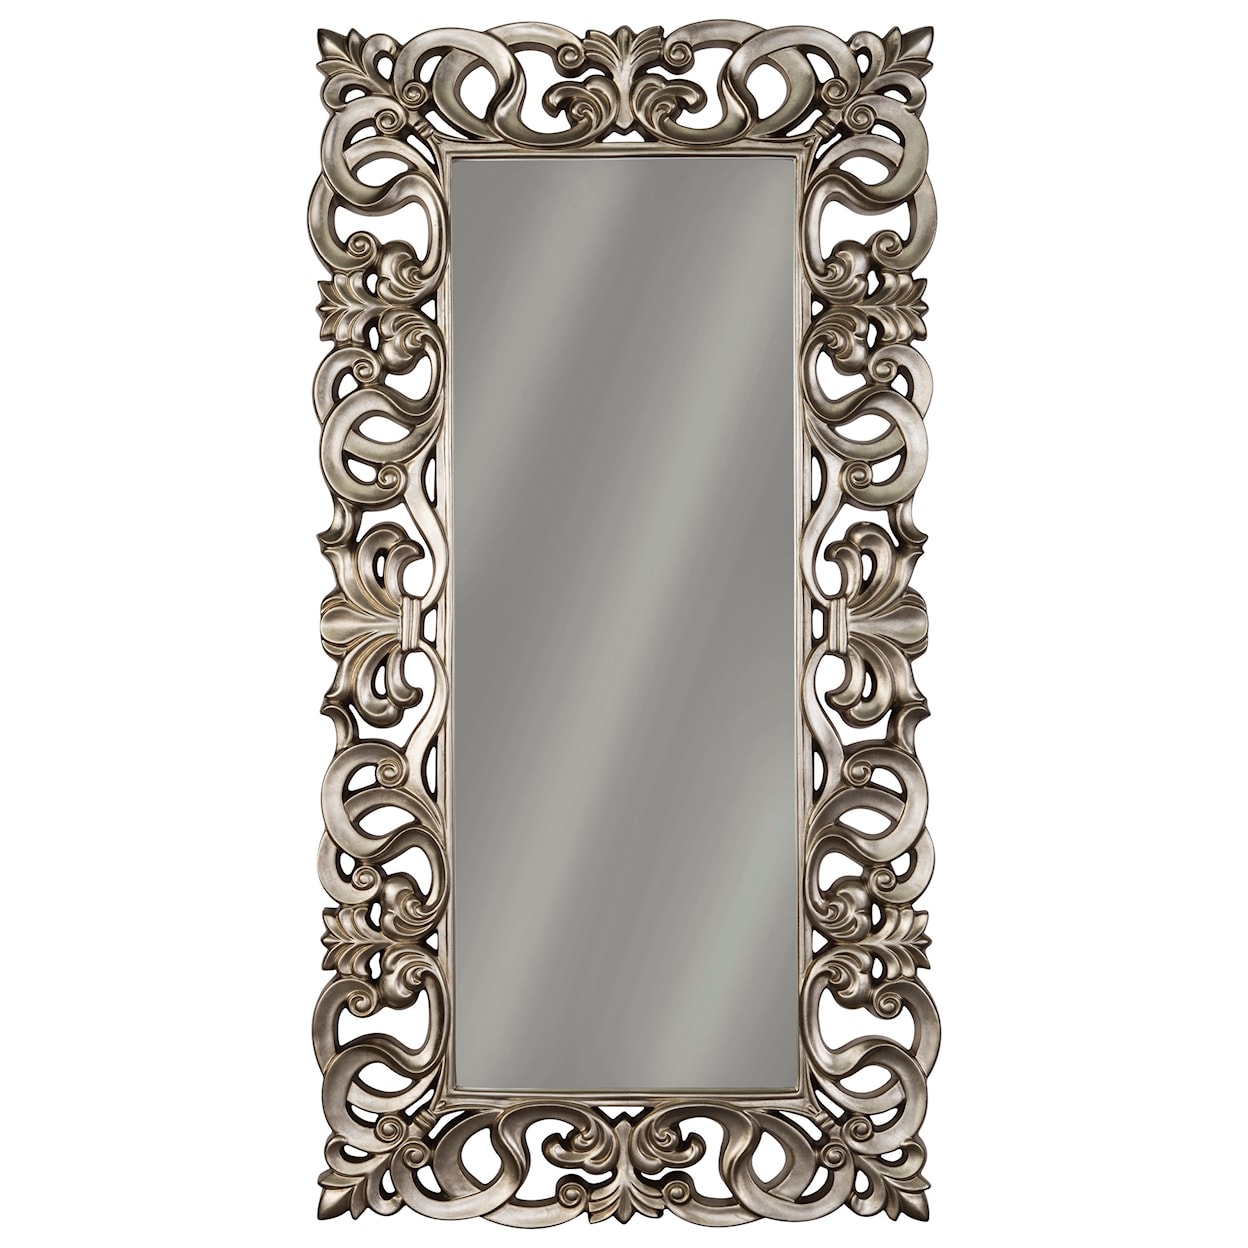 Ashley Signature Design Accent Mirrors Lucia Antique Silver Finish Accent Mirror